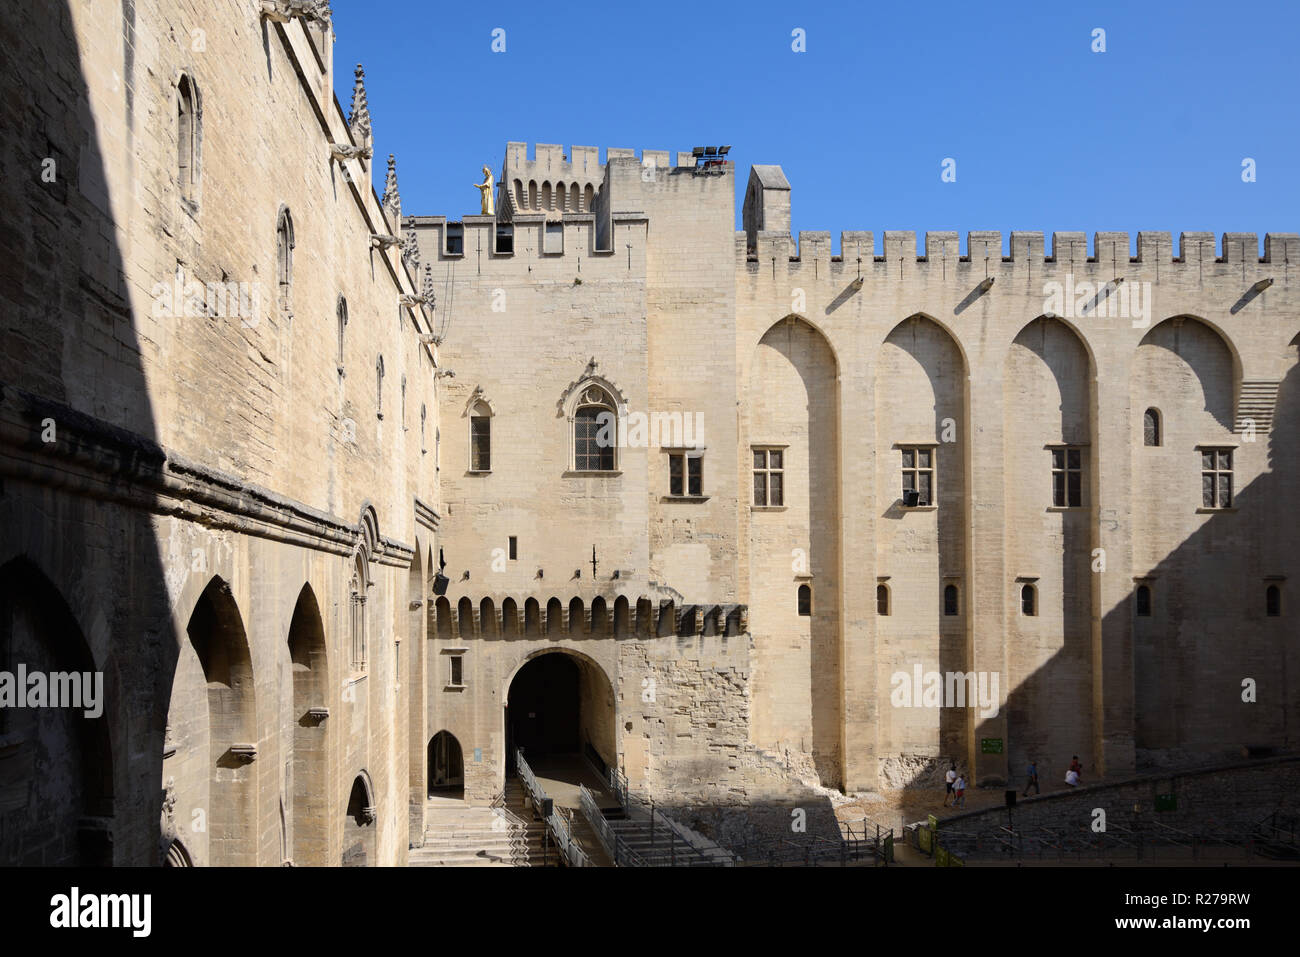 Innenhof oder Cours d'Honneur Päpste Palace, dem Päpstlichen Palast oder Palais des Papes Avignon Provence Frankreich Stockfoto